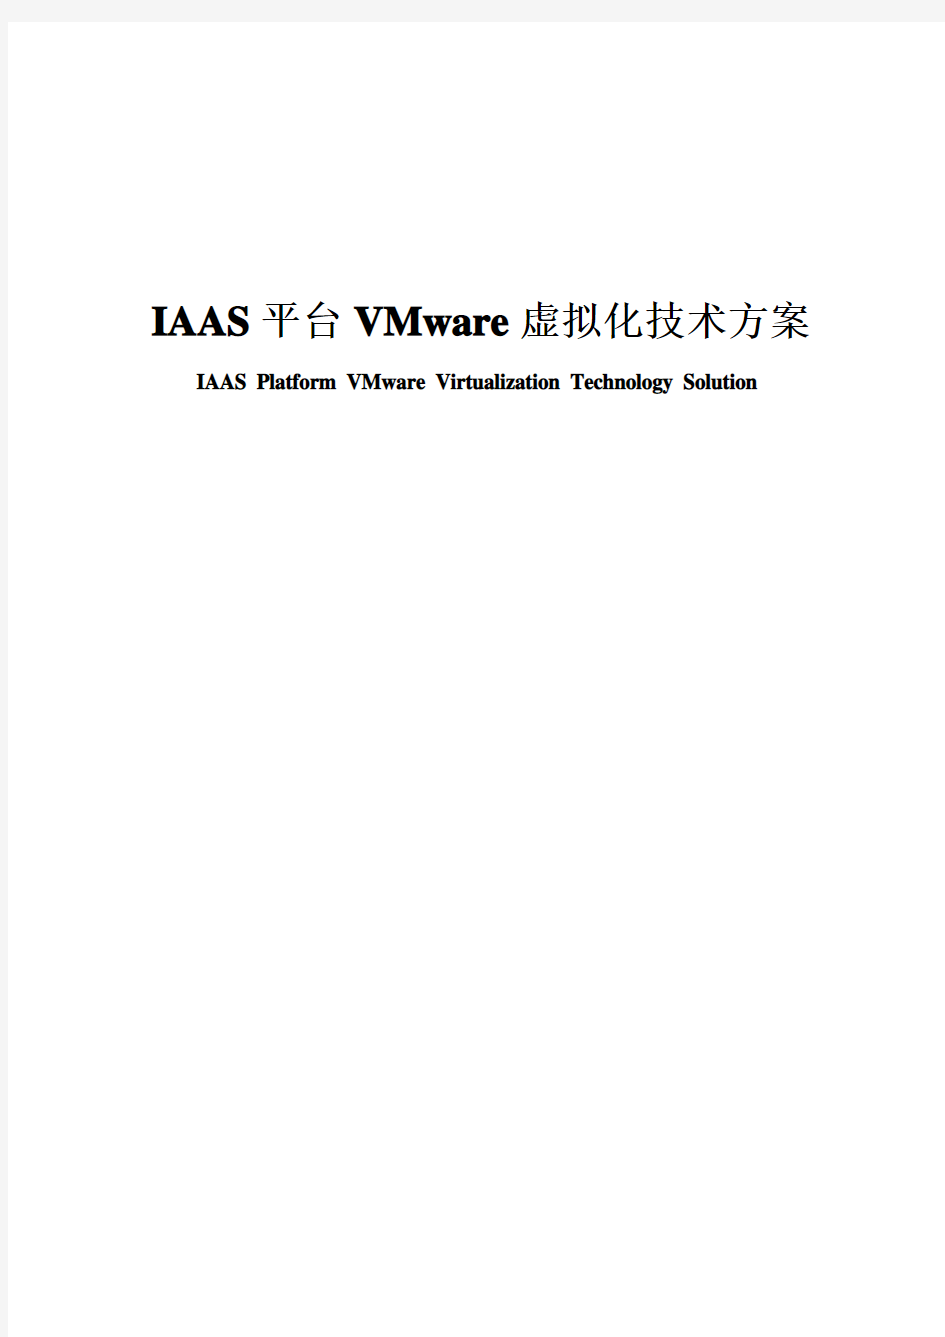 IAAS平台VMware虚拟化技术方案